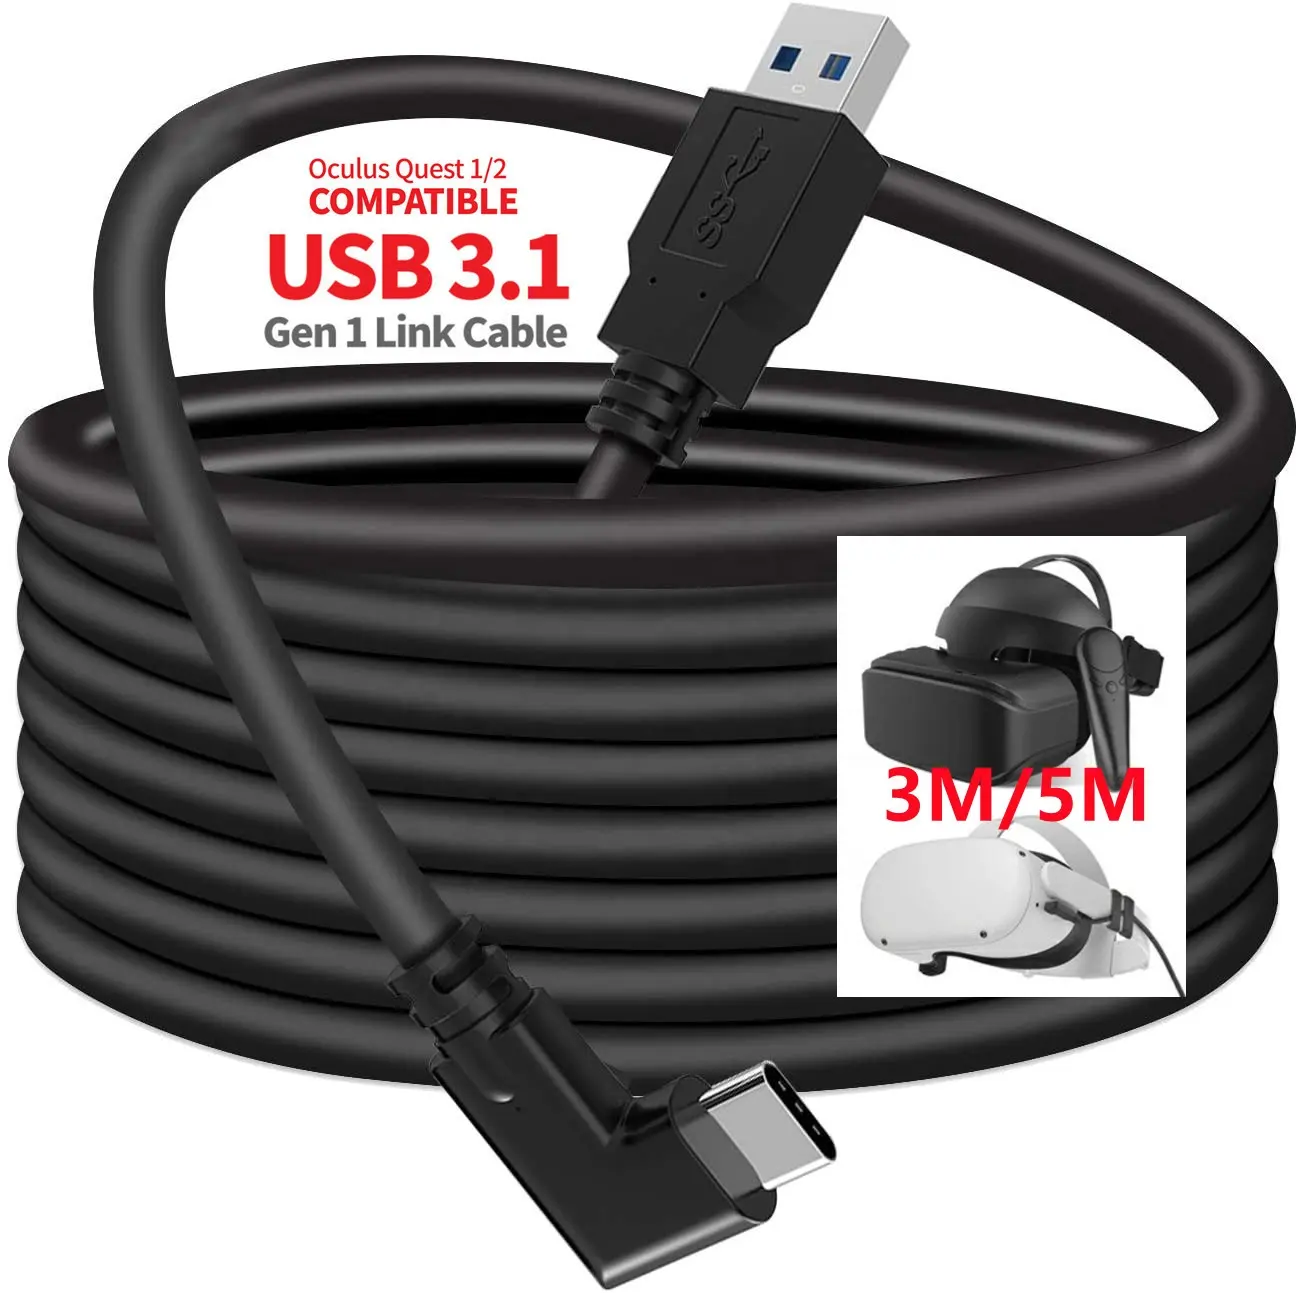 1M 3M 5M 16FT 90 derece dik açı yüksek hızlı 5Gbps 3.0 USB tip A tip C kablo Oculus görev 1 2 kulaklık VR bağlantı kablosu